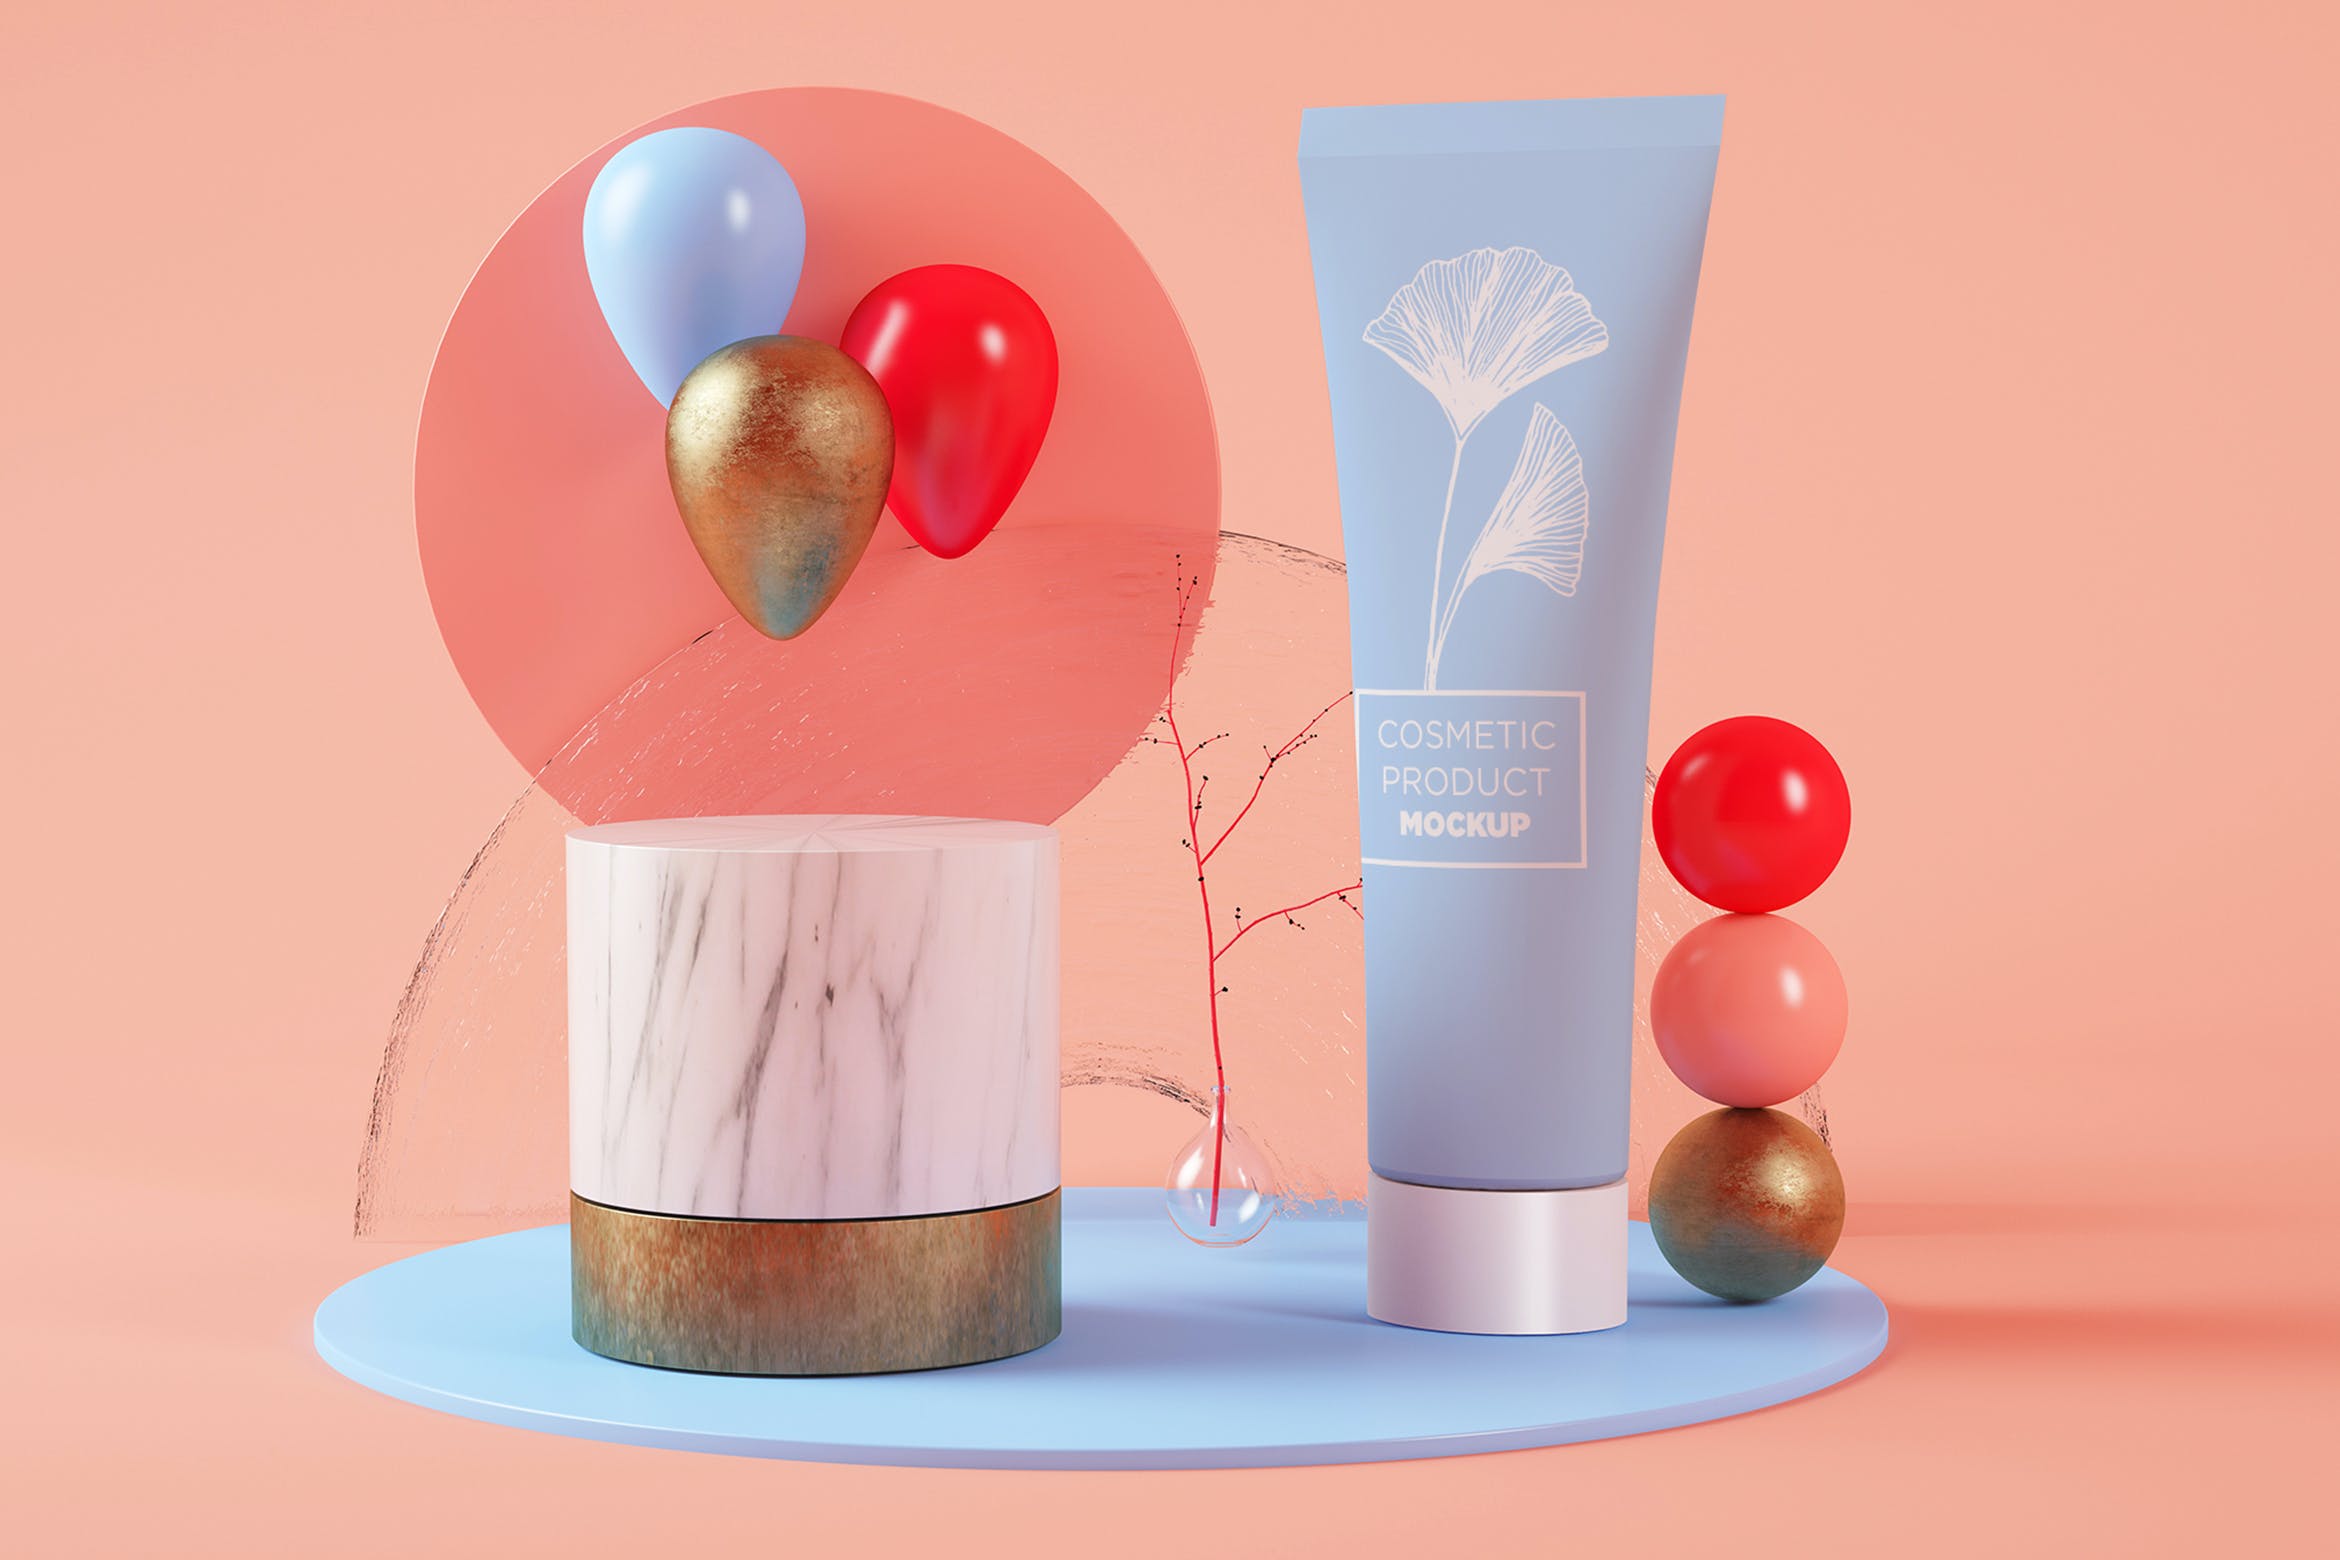 高端化妆品模板样机素材Cream Tube on a Surreal Platform Set Mockup插图